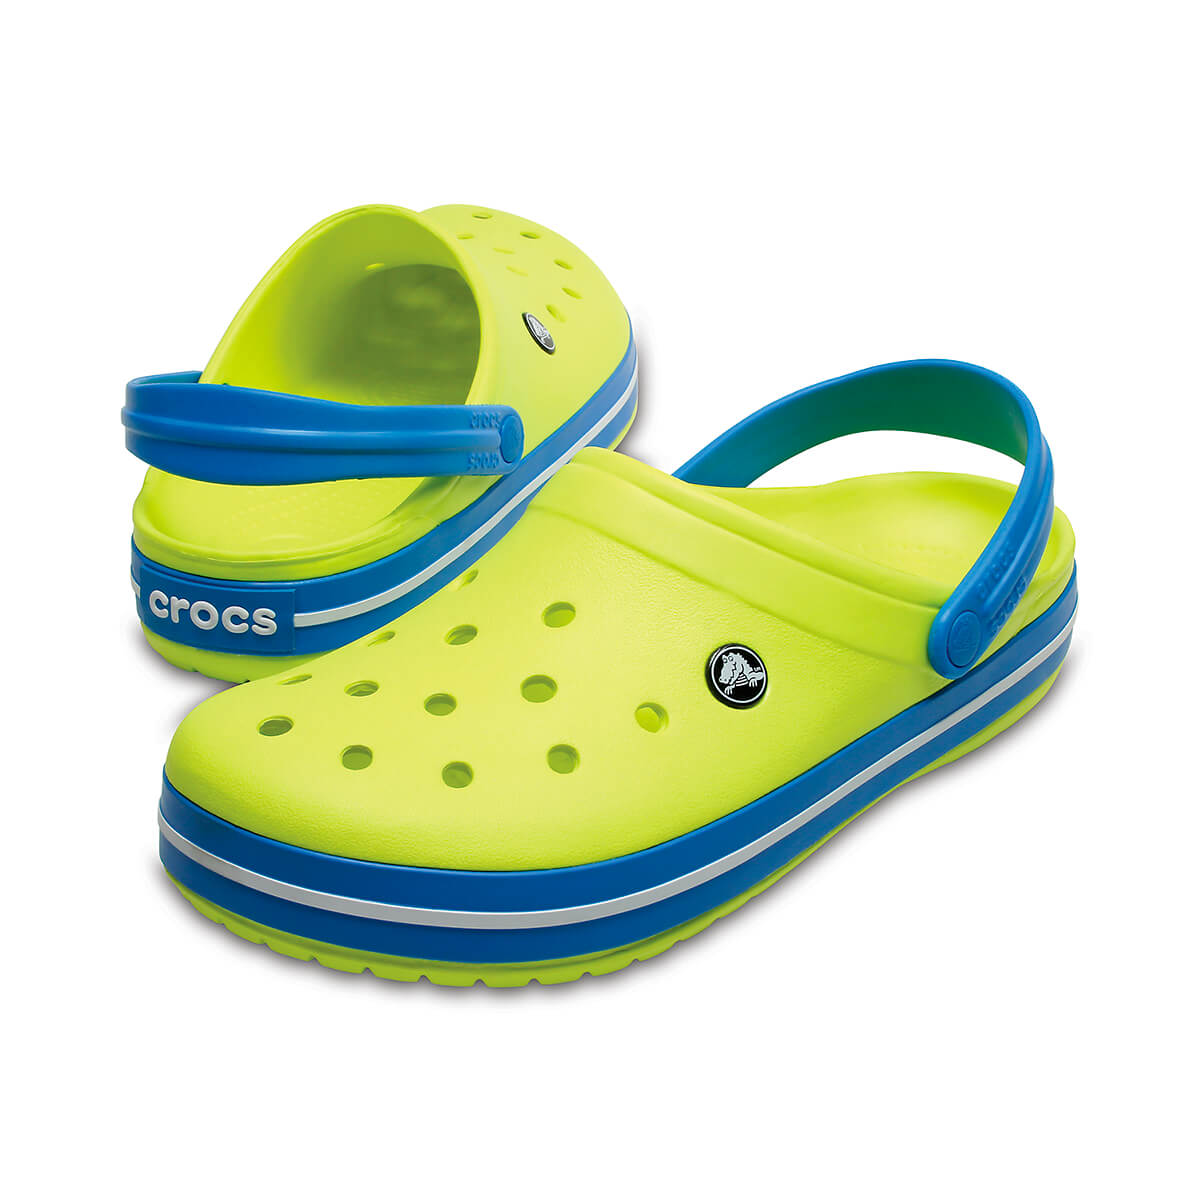 Сабо Crocs Crocband. Крокс тапочки кроксы шлепки. Сабо Crocband Clog. Crocs Clog шлёпки. Сабо крокс мужские